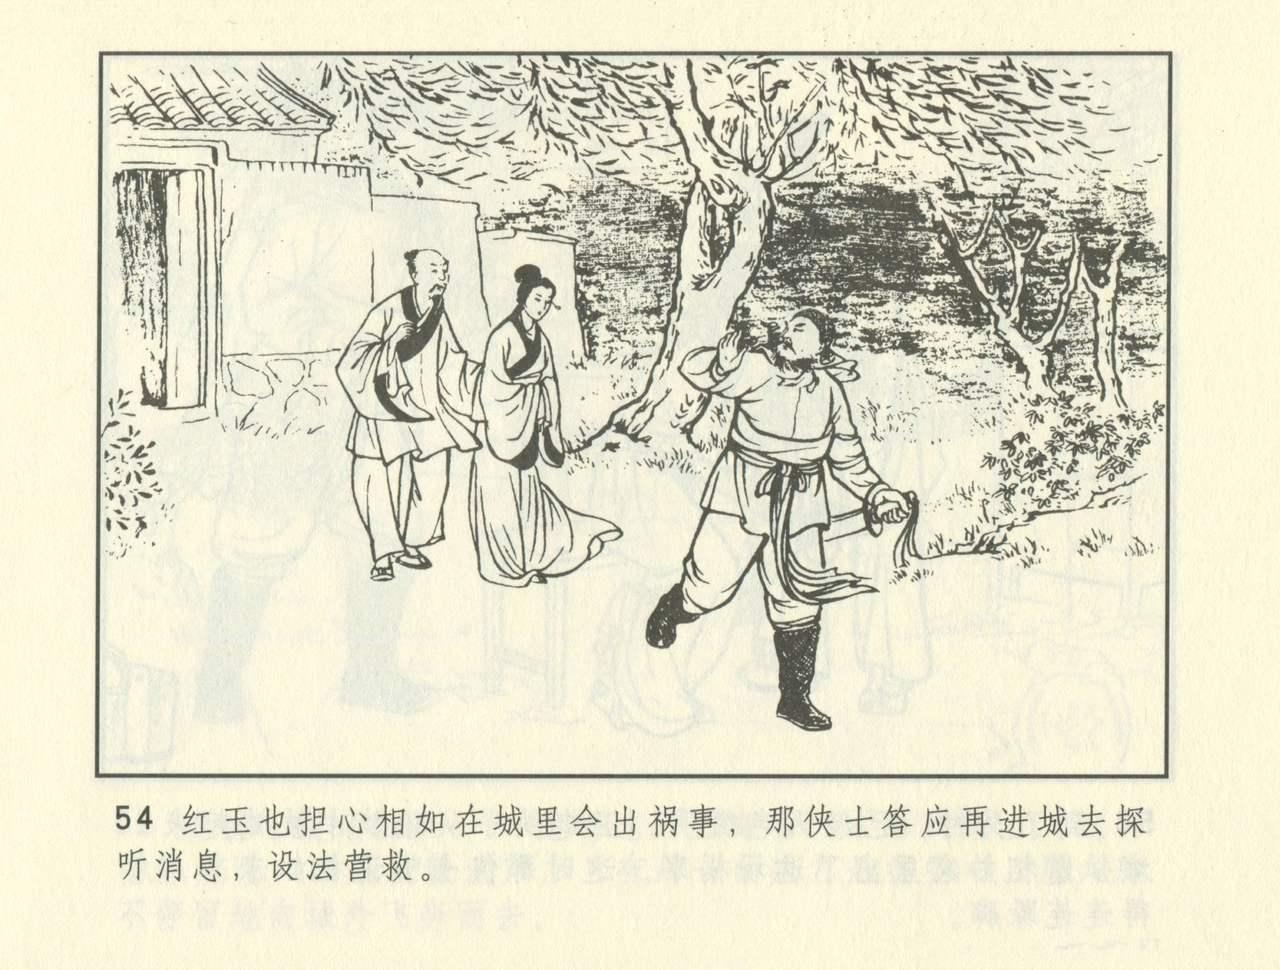 聊斋志异 张玮等绘 天津人民美术出版社 卷二十一 ~ 三十 394